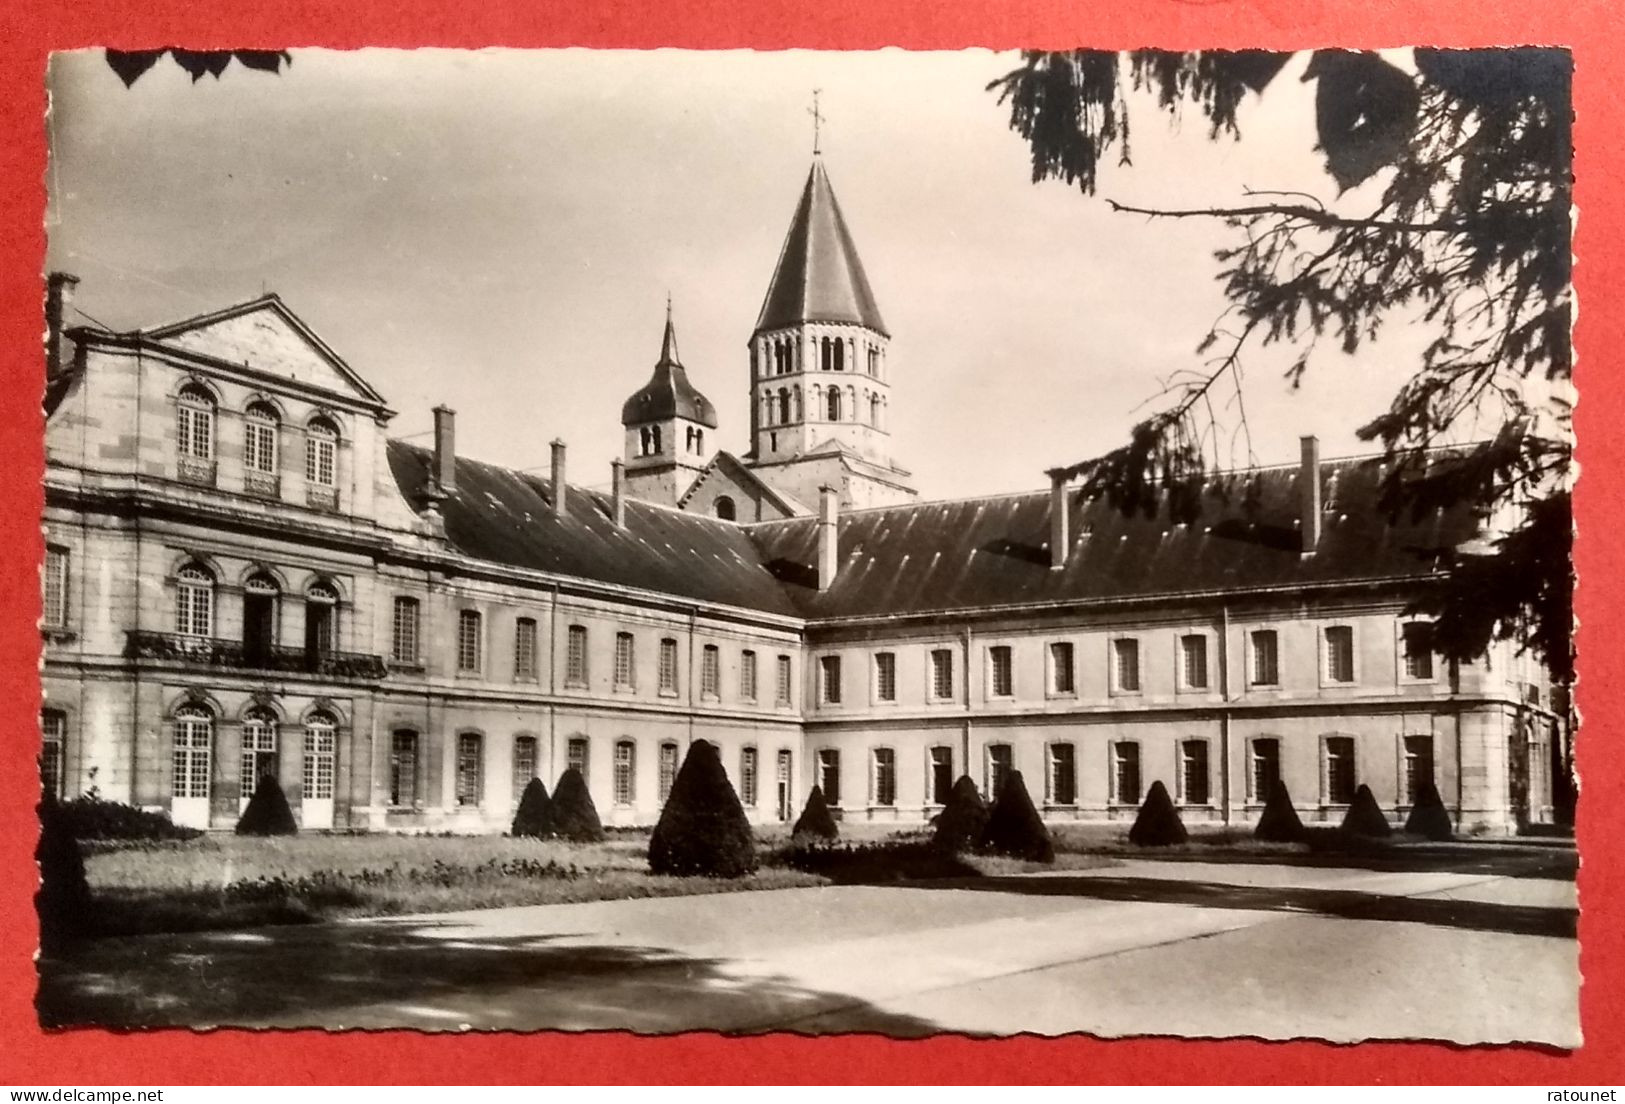 71 - Saône Loire - CLUNY - CPSM 170 - Abbaye / Palais Dathose - éd CIM - Cluny